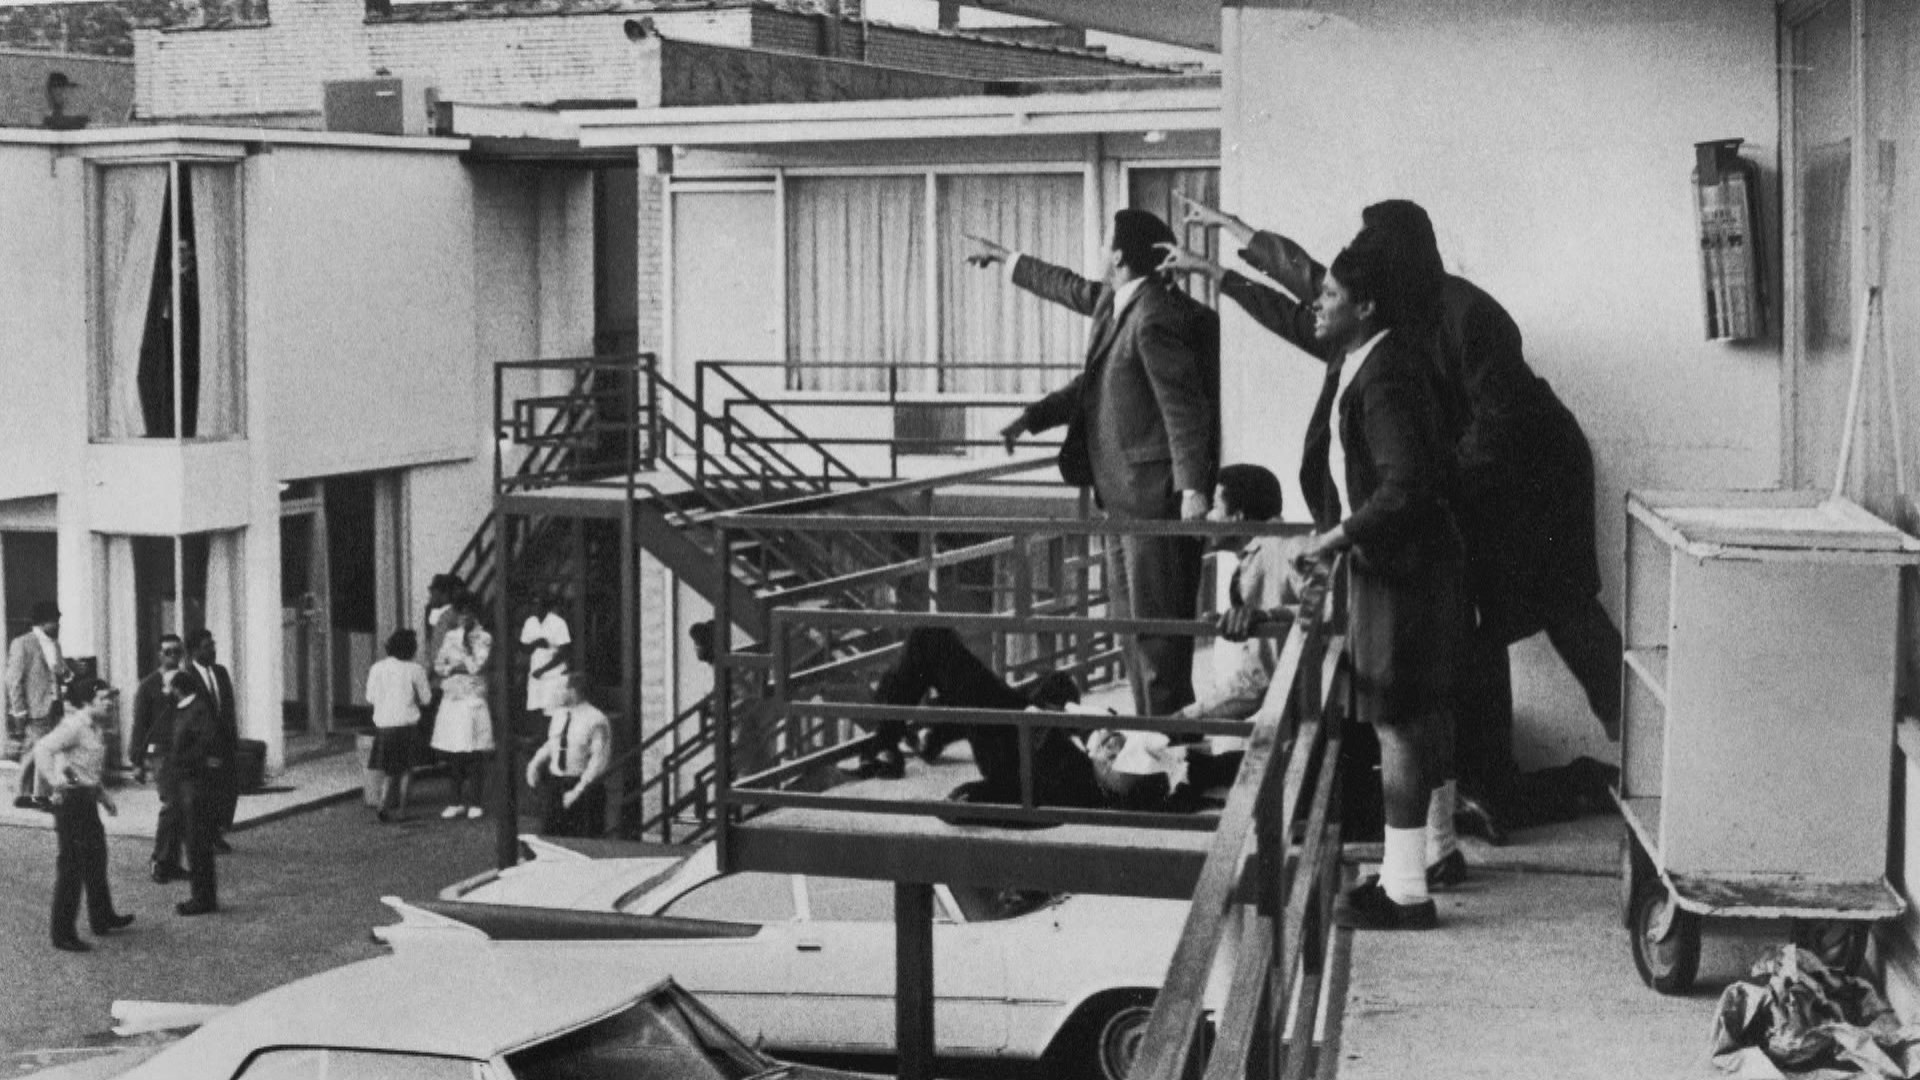 Los asociados de Martin Luther King Jr. señalan el sonido donde se originaron los disparos momentos después de su asesinato en el Lorraine Motel el 4 de abril de 1968, en Memphis, Tenn. Joseph Louw / The LIFE Images Collection a través de Getty